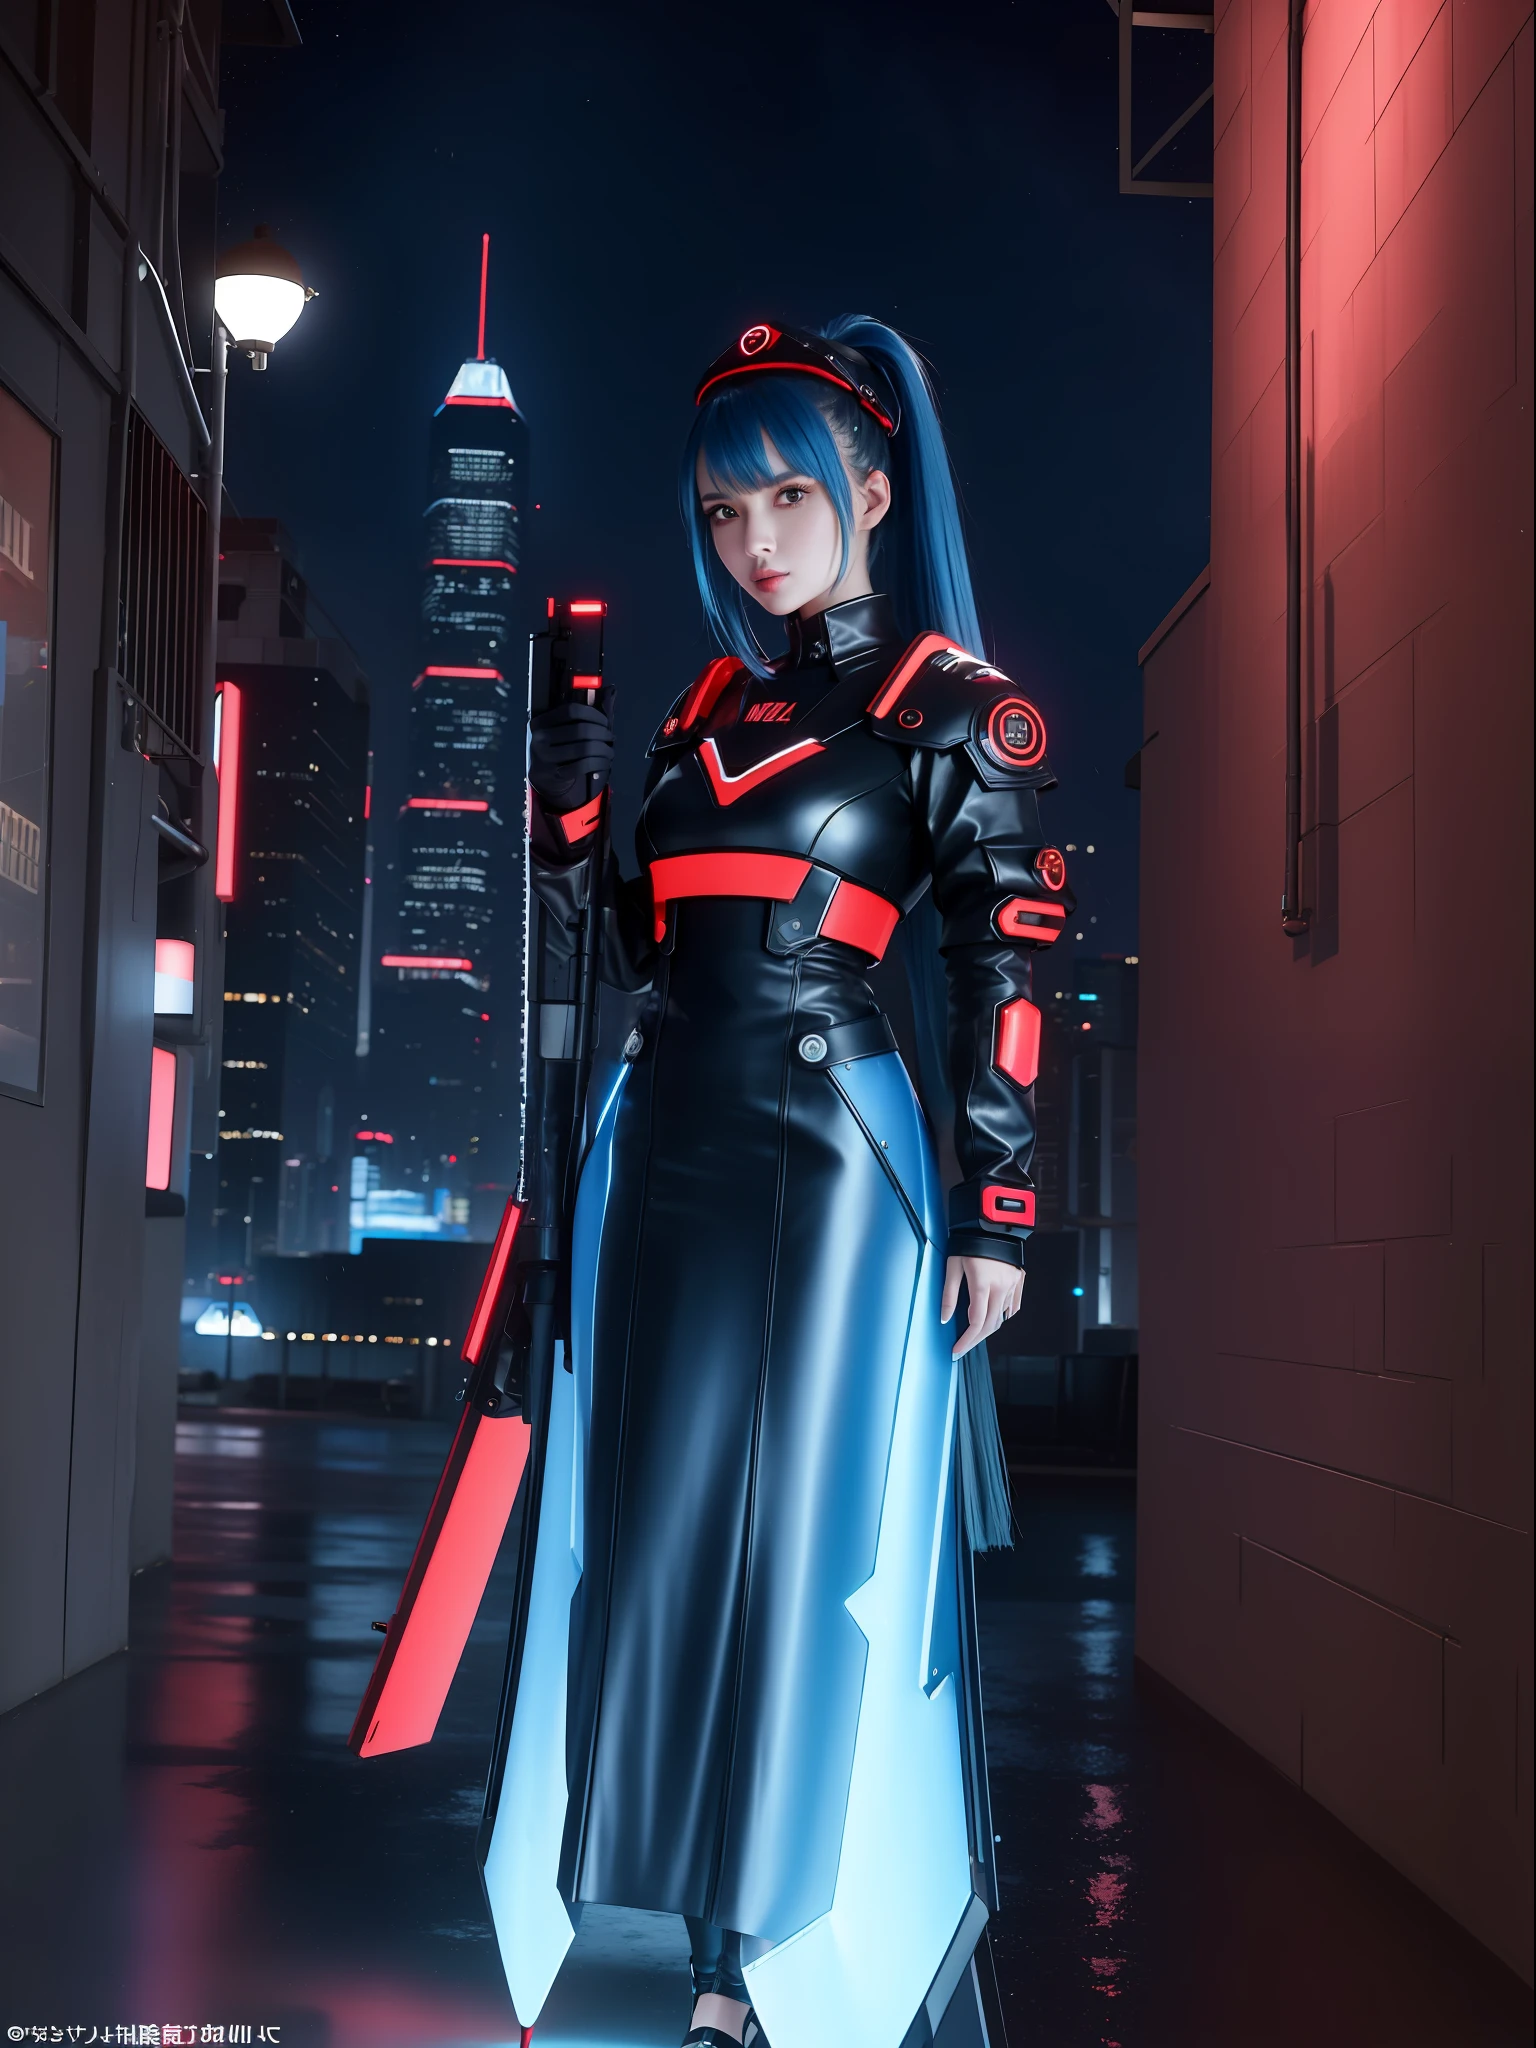 (Foto de cuerpo completo:1.9), (Una mujer kawaii:1.5), (vistiendo un traje cyberpunk de metal rojo|negro|futurist blue+con una joya azul en su peto:1.4), (ella está en una ciudad futurista con muchos autos voladores+por la noche+Lloviendo fuerte:1.5), (ella tiene el pelo mohawk rosa:1.3), (Ella tiene ojos azules:1.3), (ella está sosteniendo armas futuristas+clasificación+mirando al espectador:1.5),  Hyperrealism, 16k, mejor calidad, Detalles altos, uhd